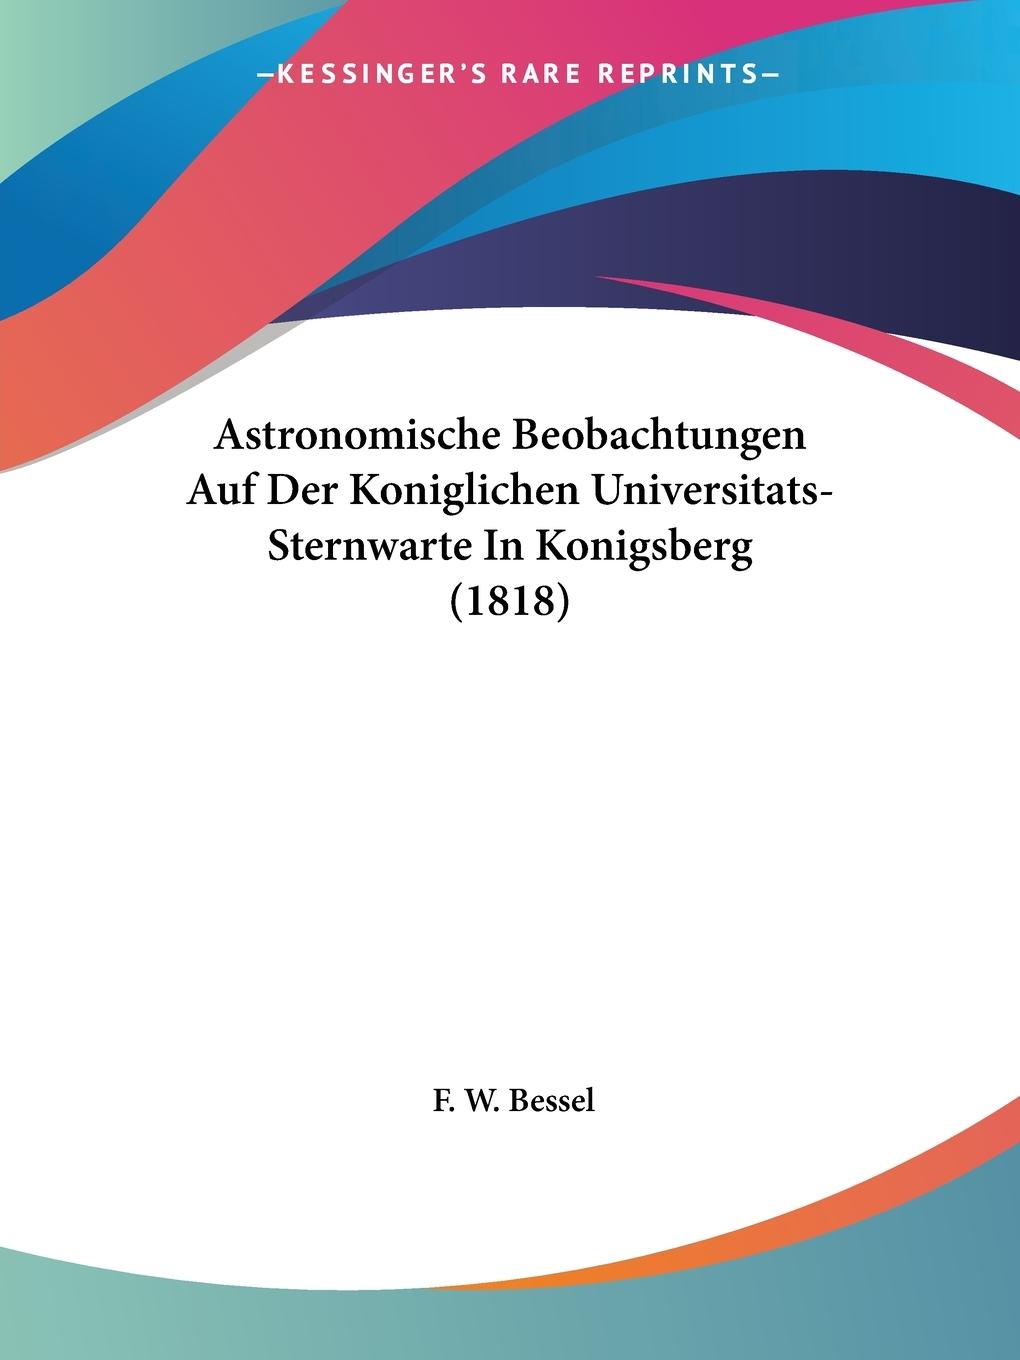 Astronomische Beobachtungen Auf Der Koniglichen Universitats-Sternwarte In Konigsberg (1818) - Bessel, F. W.